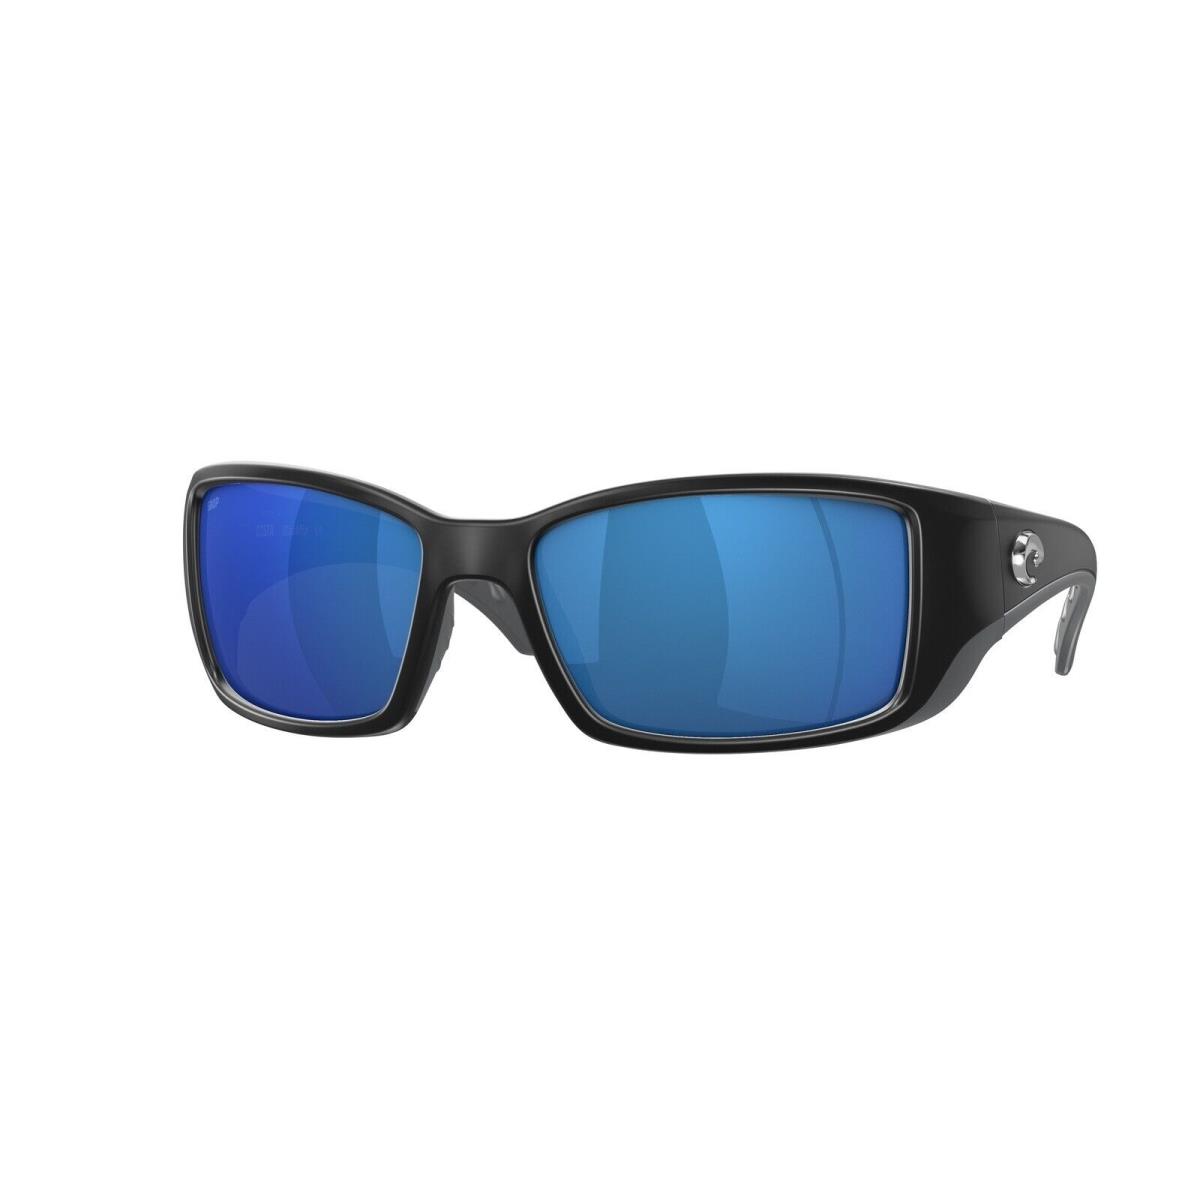 Costa Del Mar Blackfin Sunglasses Matte Black w/ Blue Mirror Polarized 580P Lens